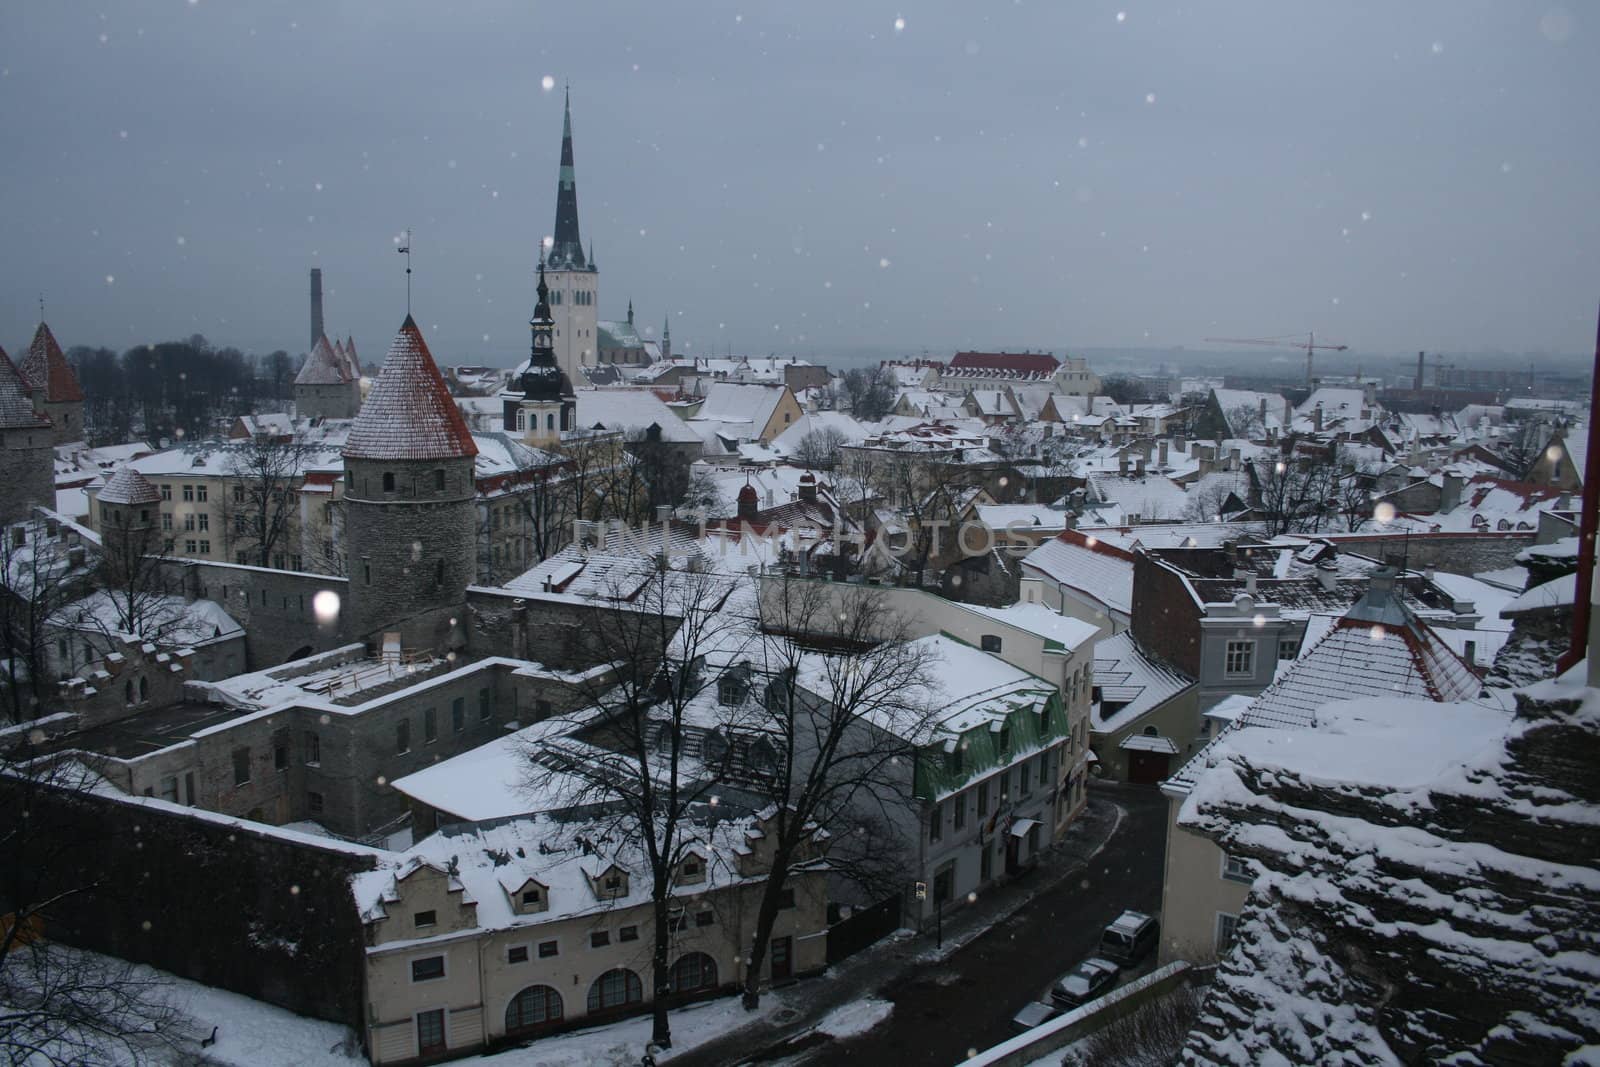 Winter view on old city of Tallinn, Estonia.
